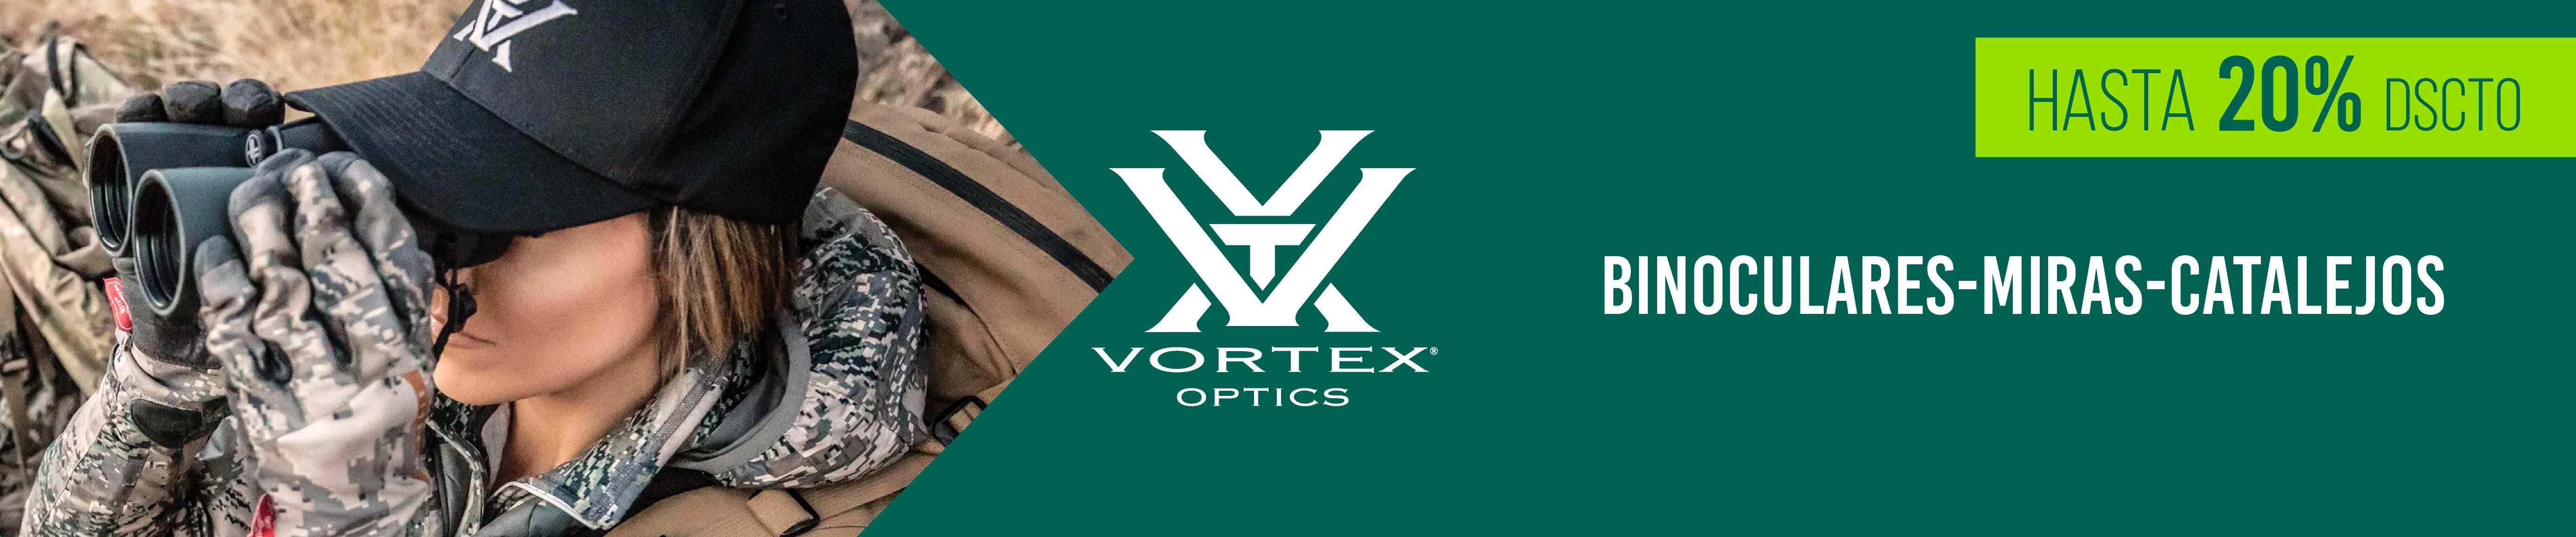 Ofertas Vortex Optics 